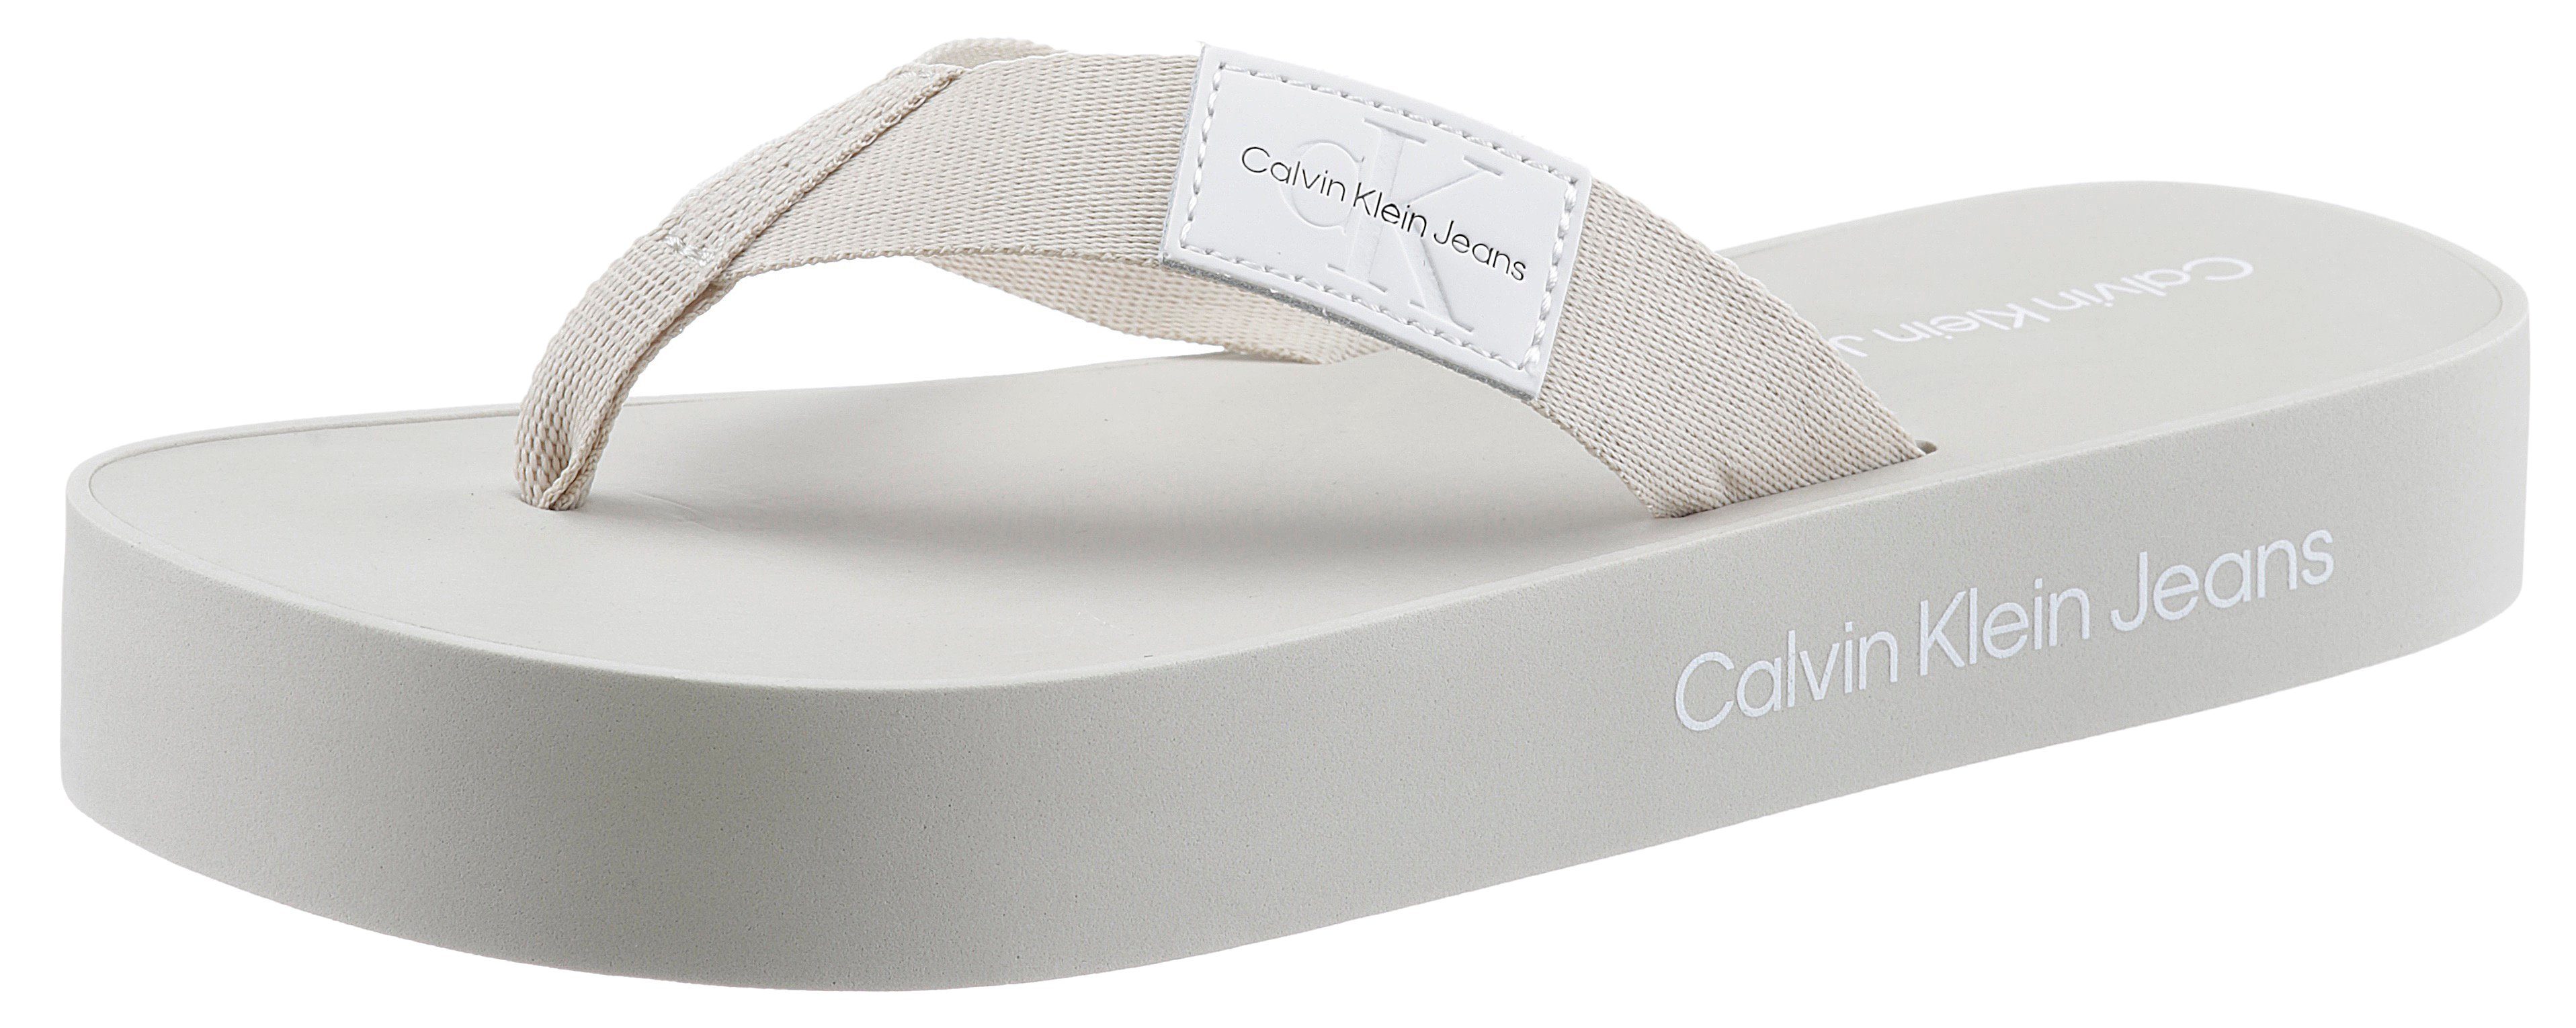 Calvin Klein Jeans DAY 1T Zehentrenner für den Sommer eierschale